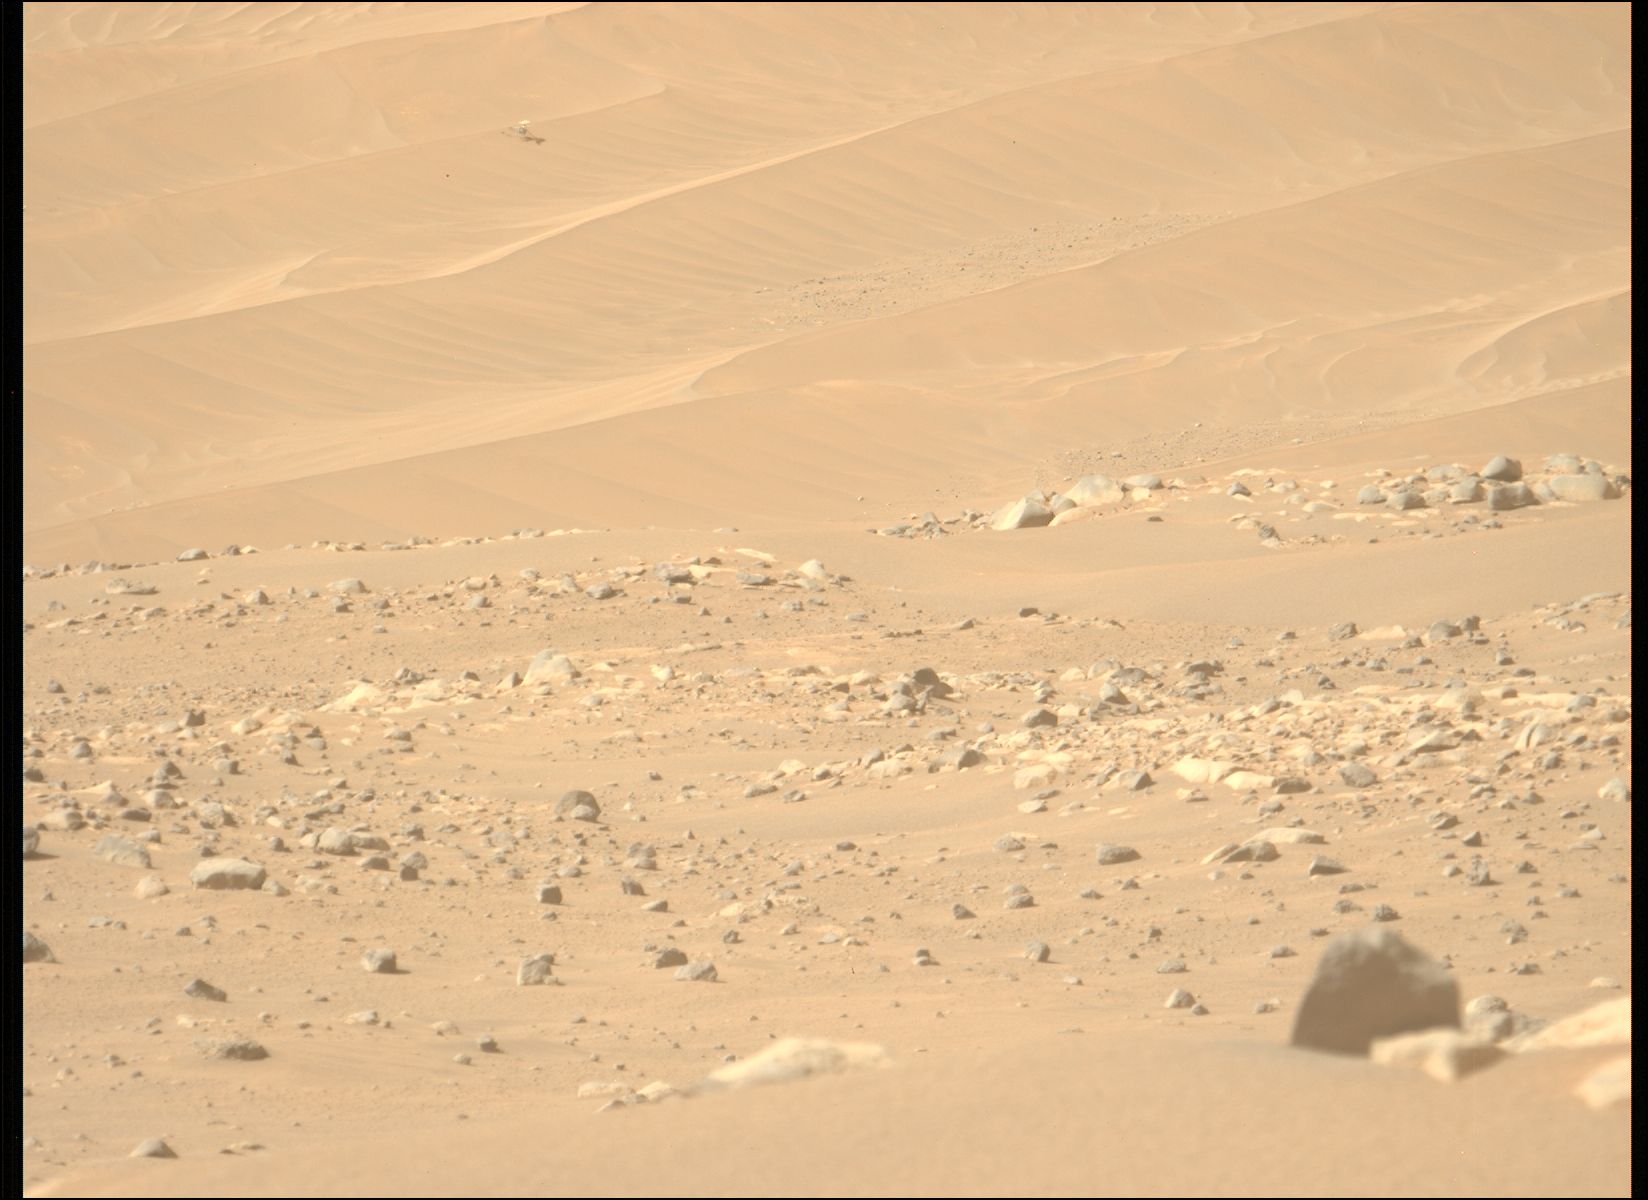 een kleine helikopter is roerloos te zien op een zandduin in de verte terwijl rode aarde en rotsen het tafereel vullen. 